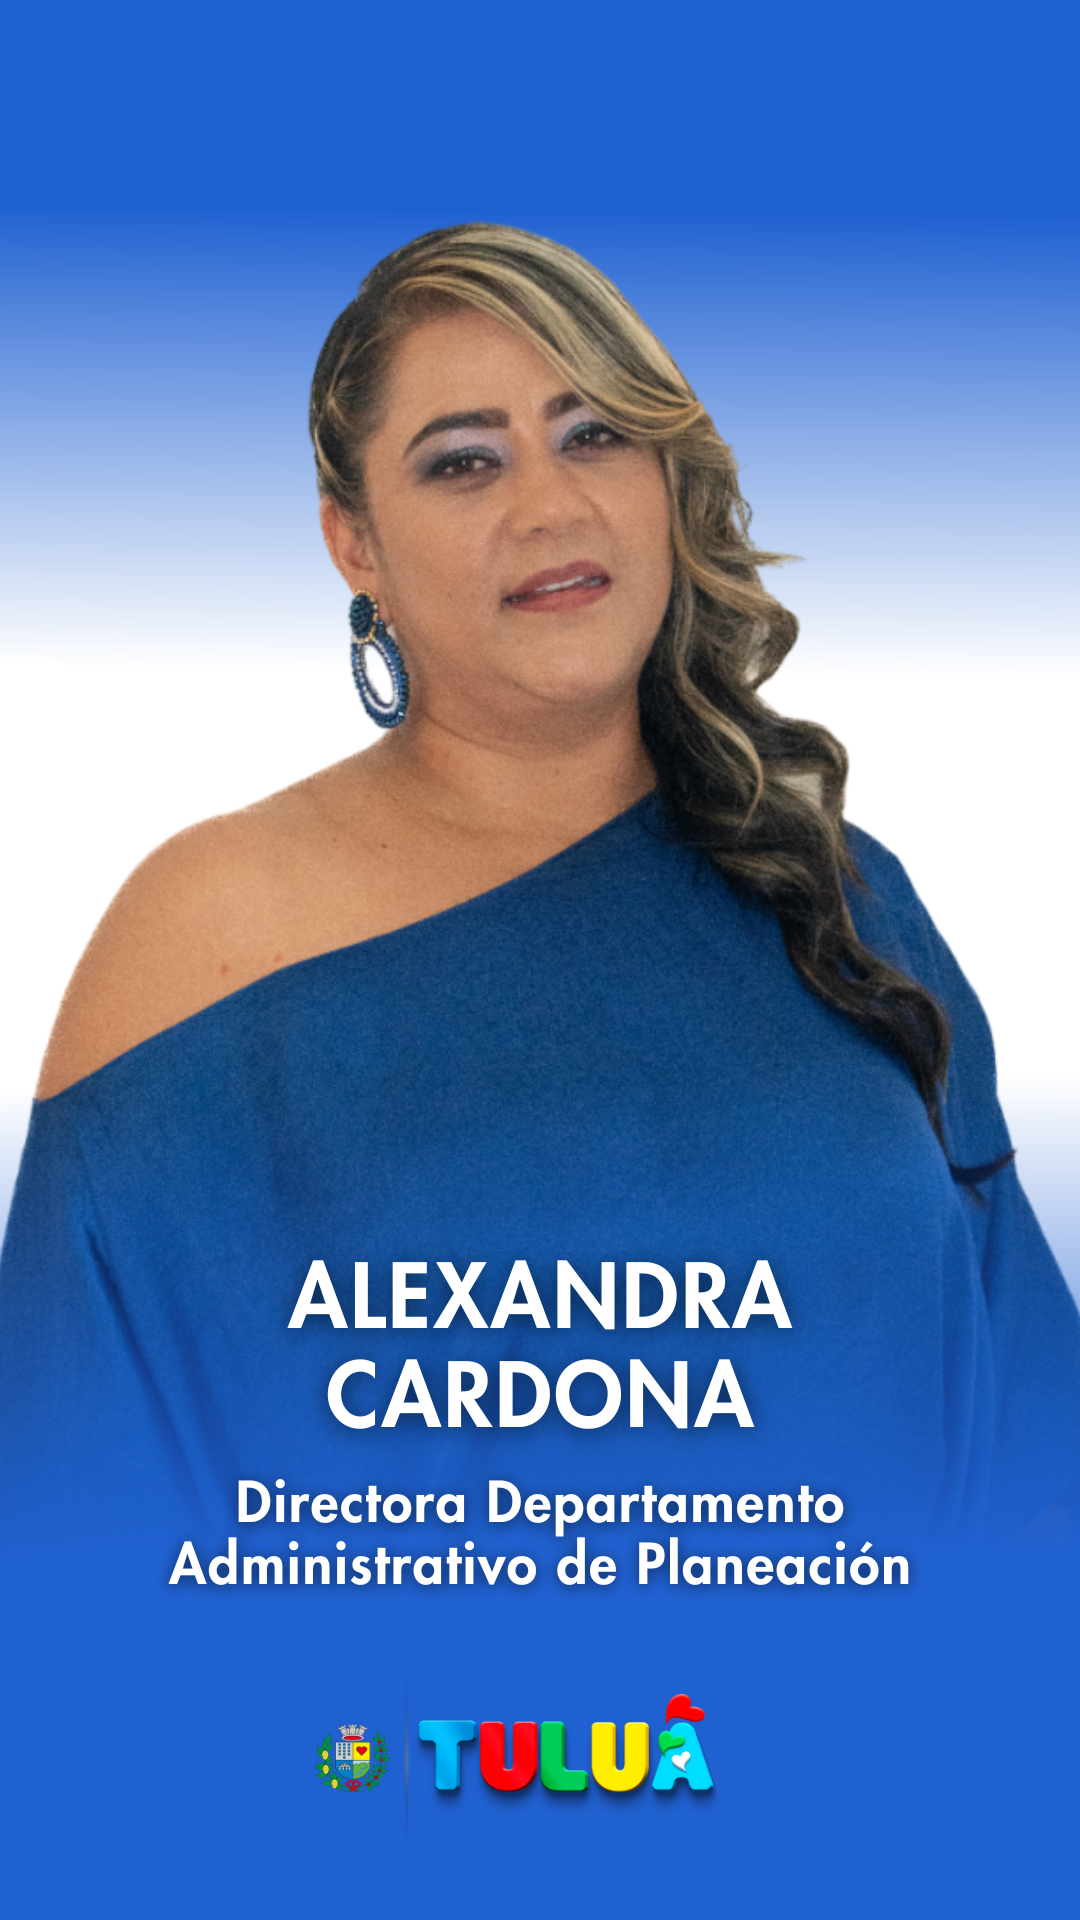 Alexandra Cardona